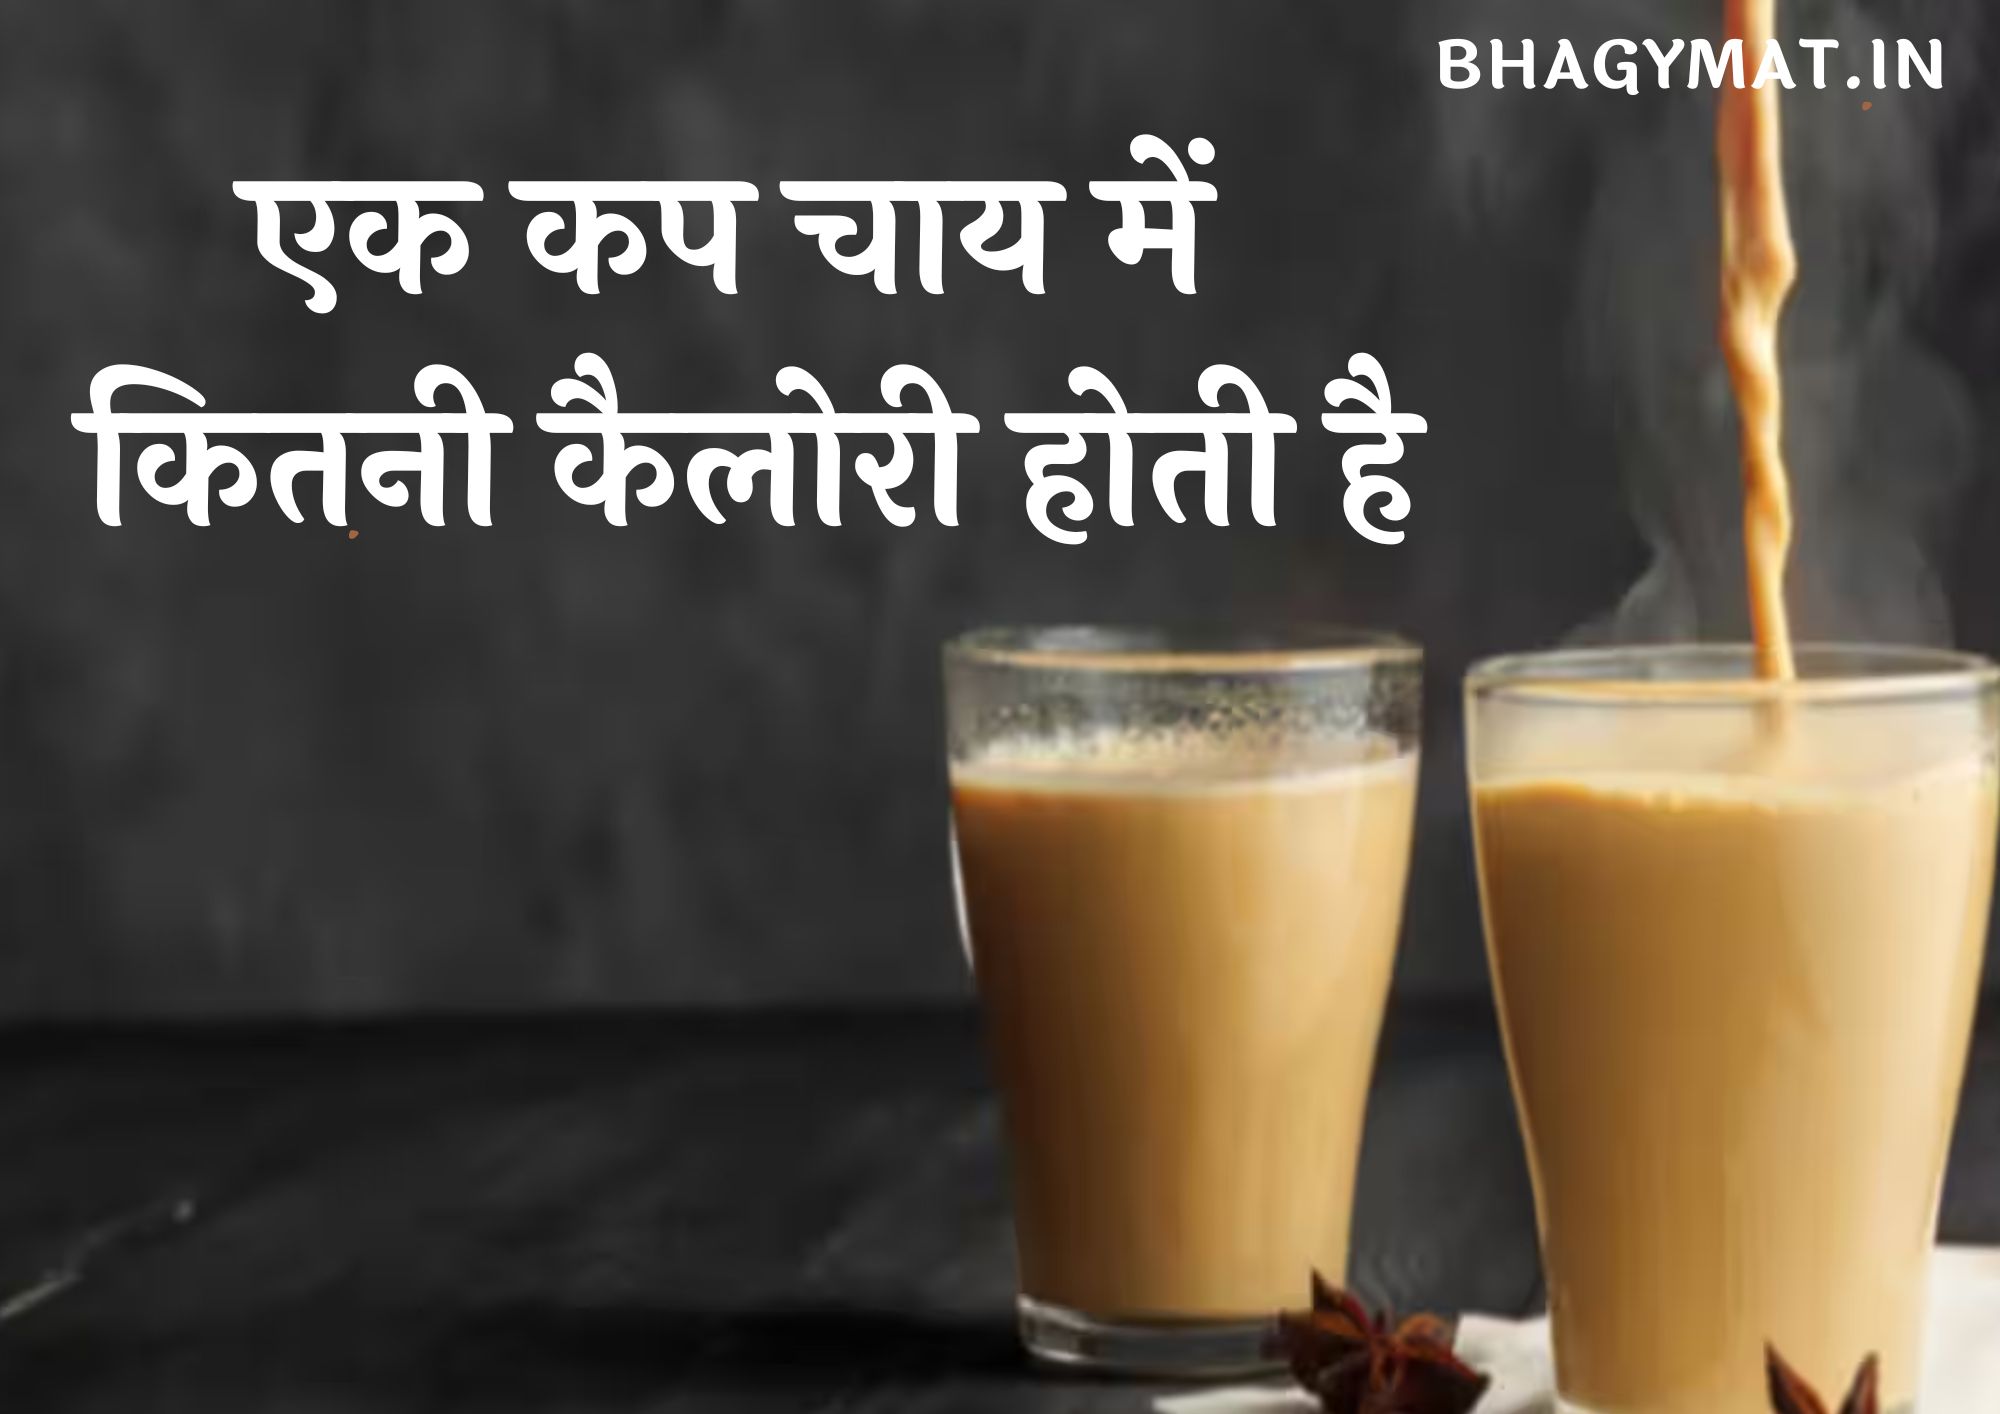 एक कप चाय में कितनी कैलोरी होती है (Ek Cup Chai Mein Kitni Calorie Hoti Hai)